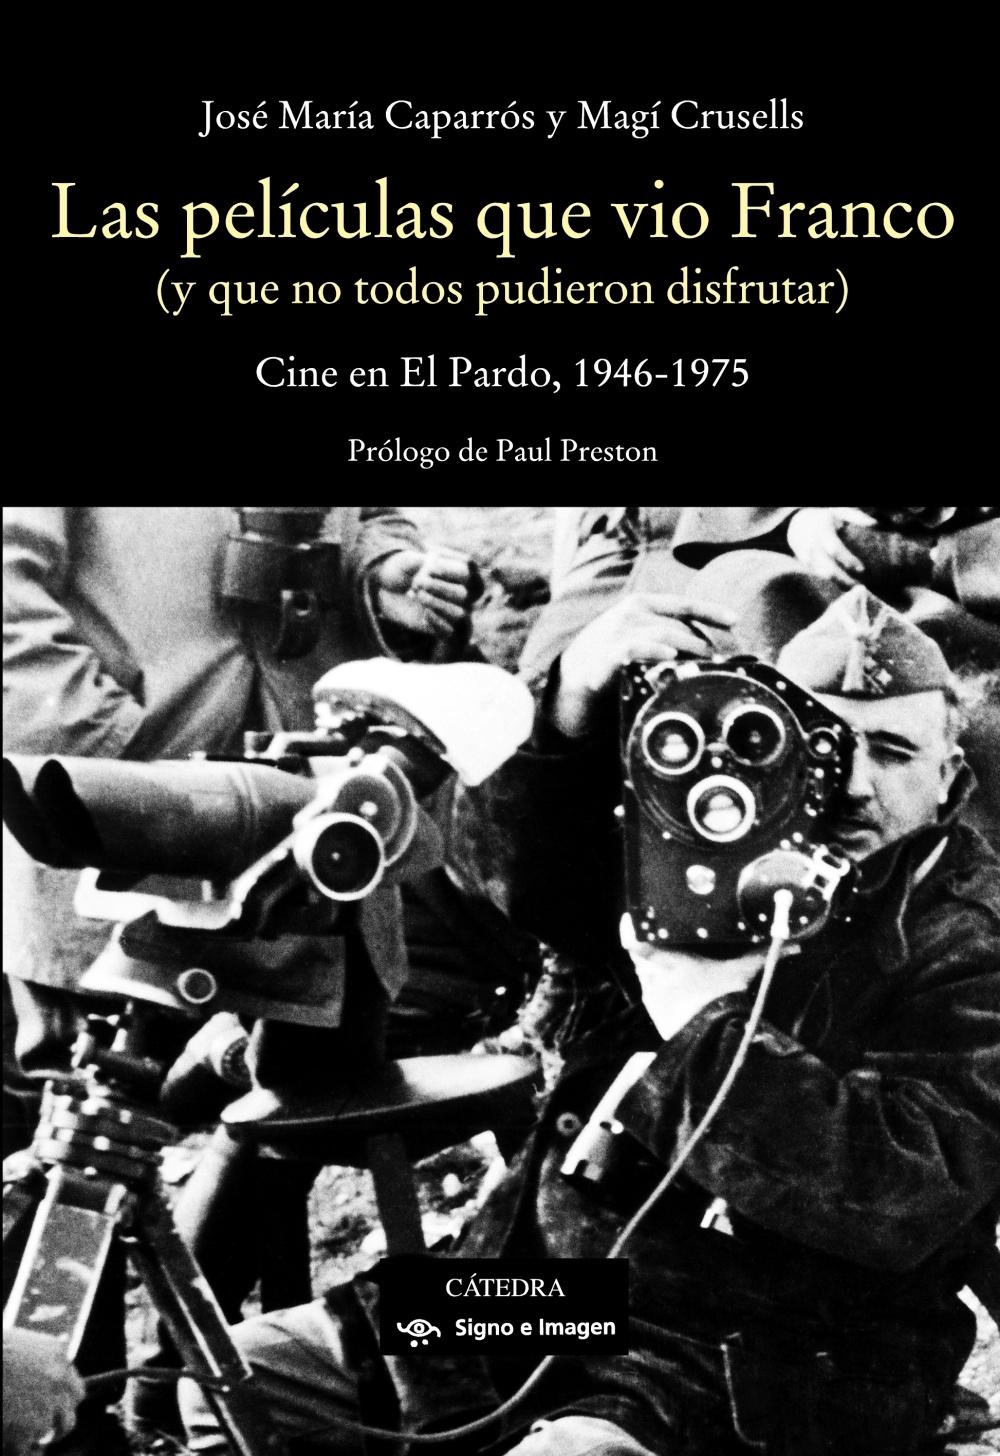 PELÍCULAS QUE VIO FRANCO, LAS "CINE EN EL PARDO, 1946-1975". 